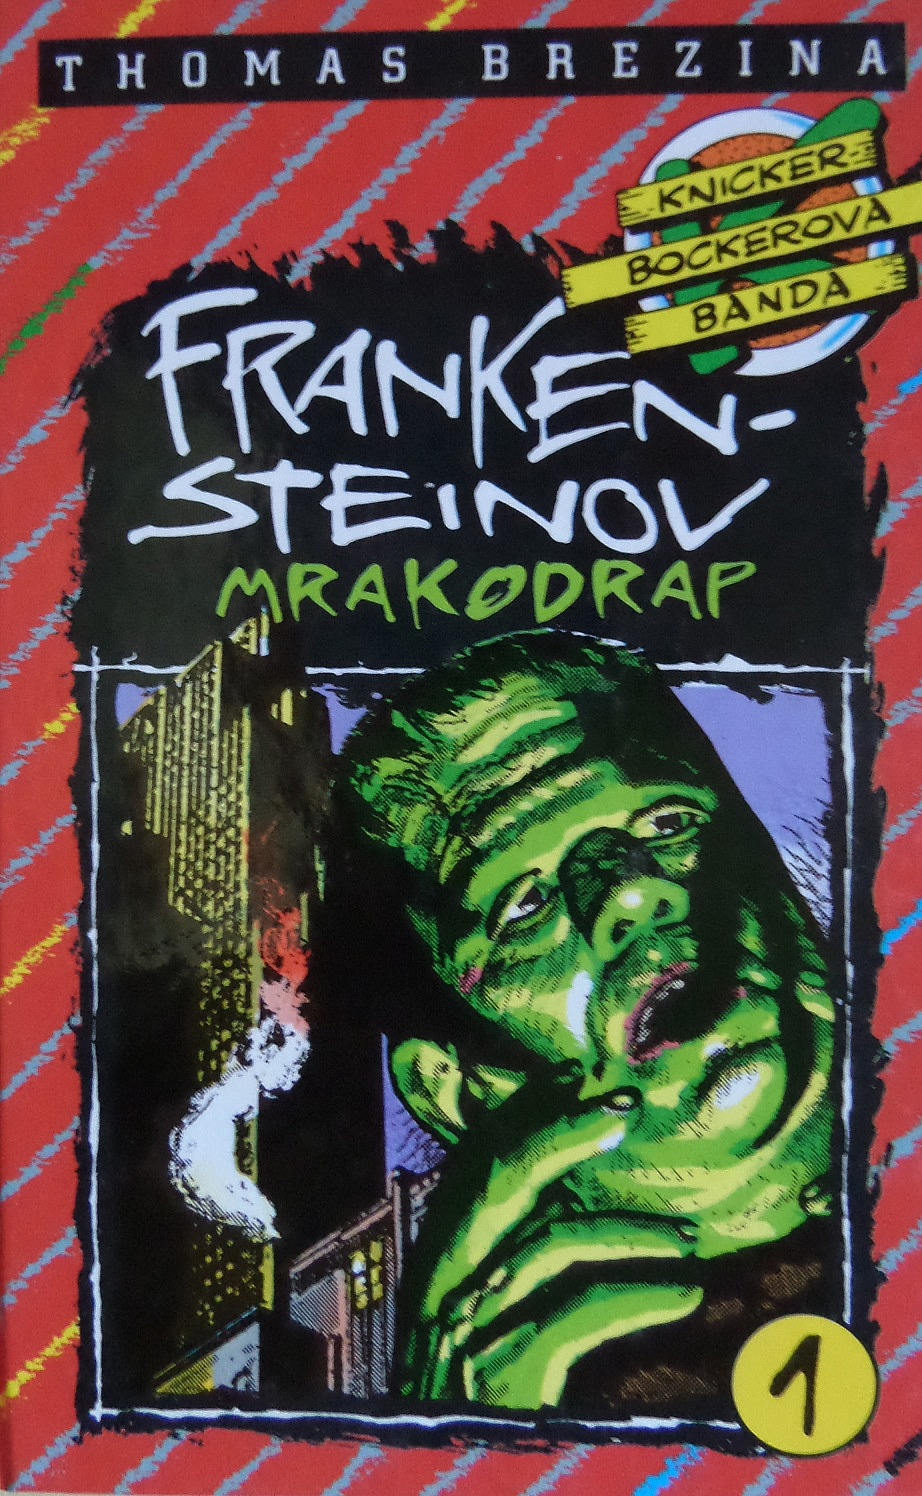 Frankensteinov mrakodrap